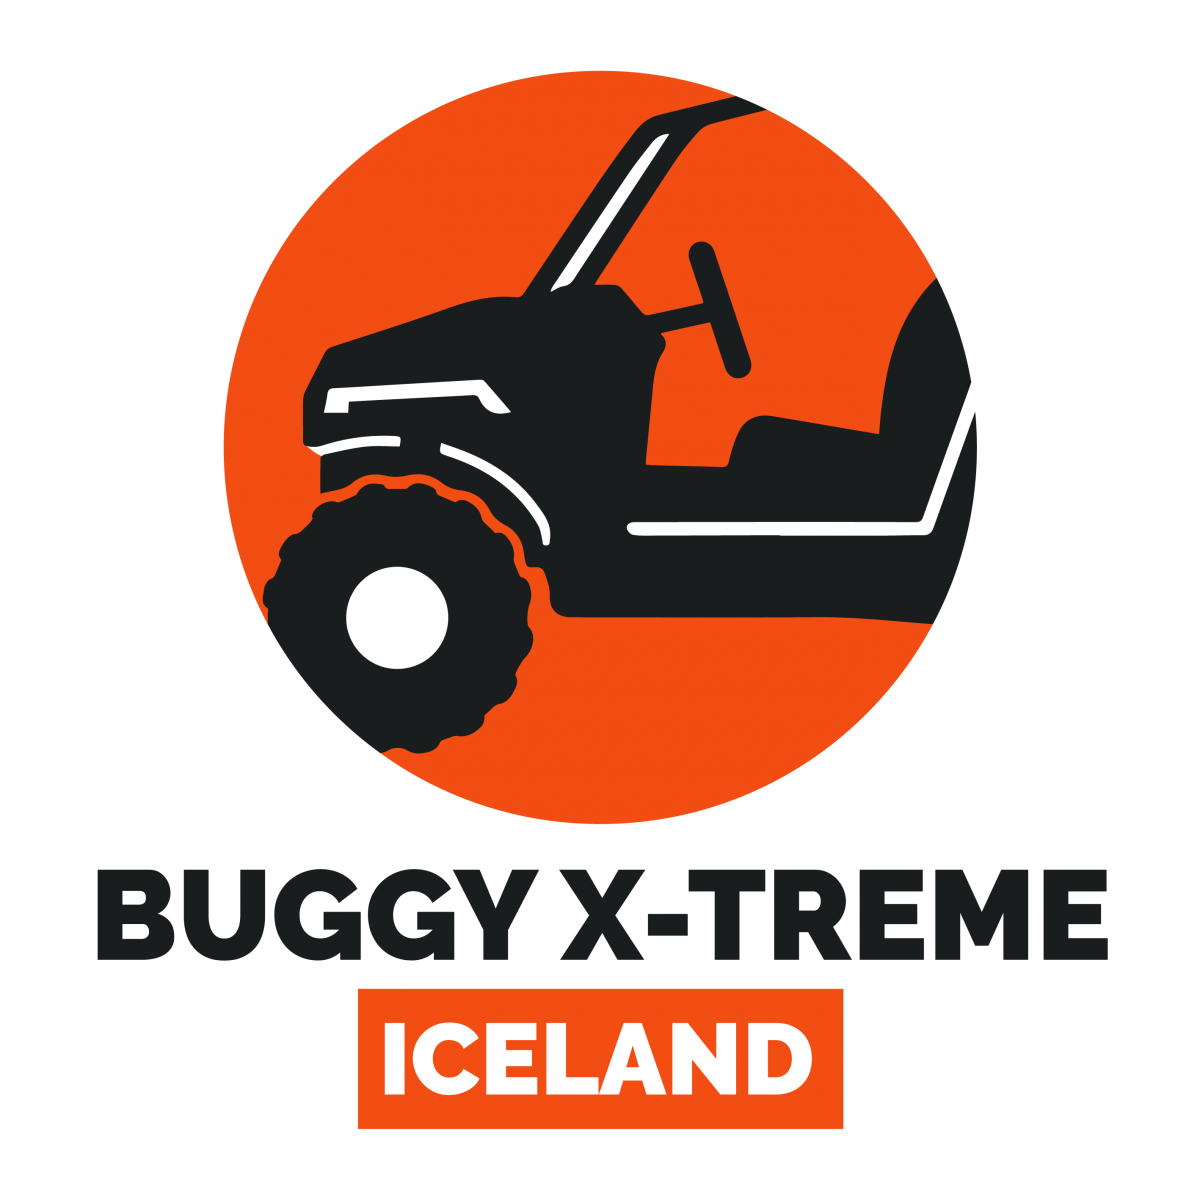 Buggy X-treme Iceland